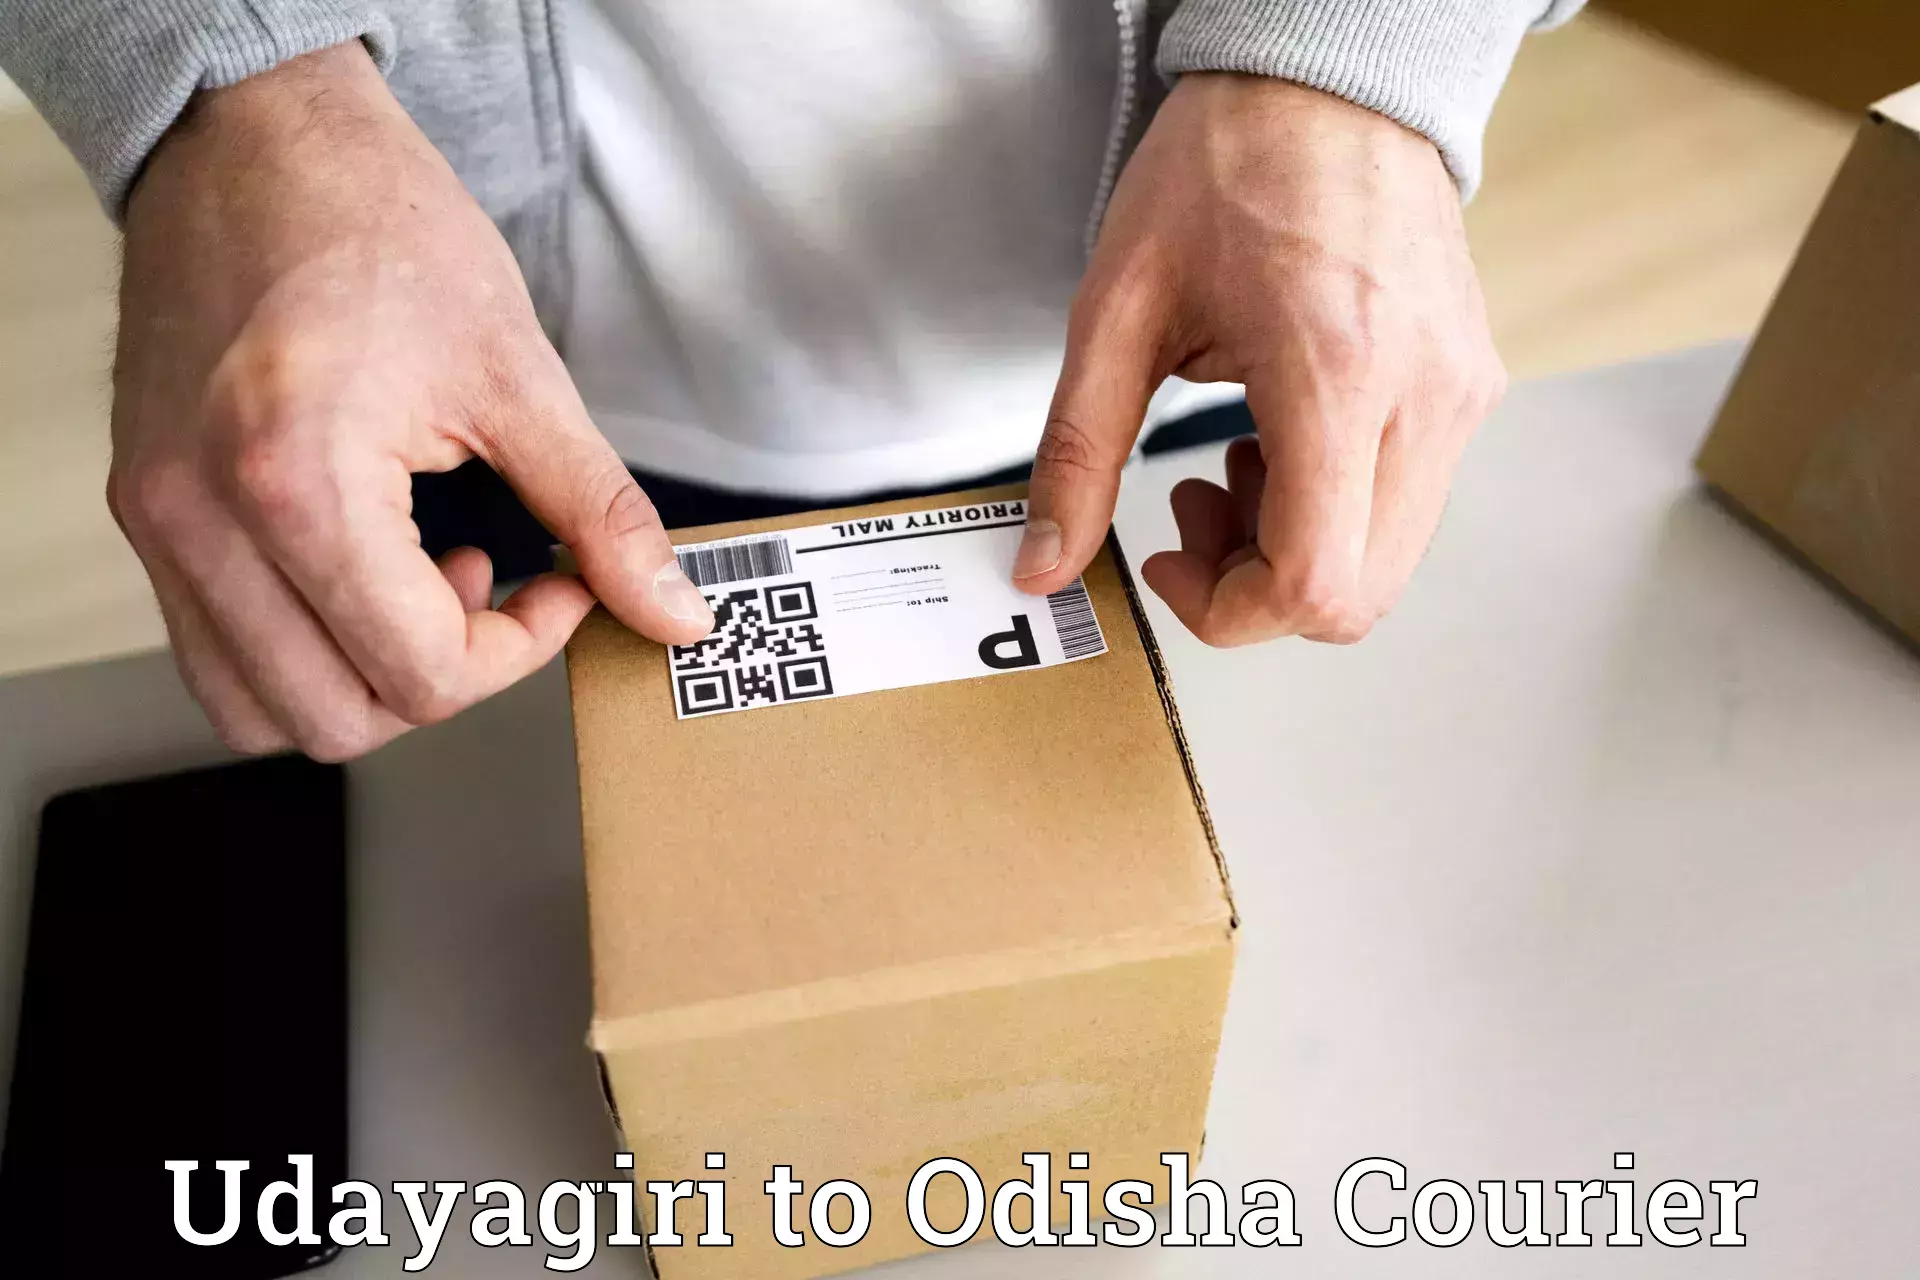 Same-day delivery solutions Udayagiri to Karanjia